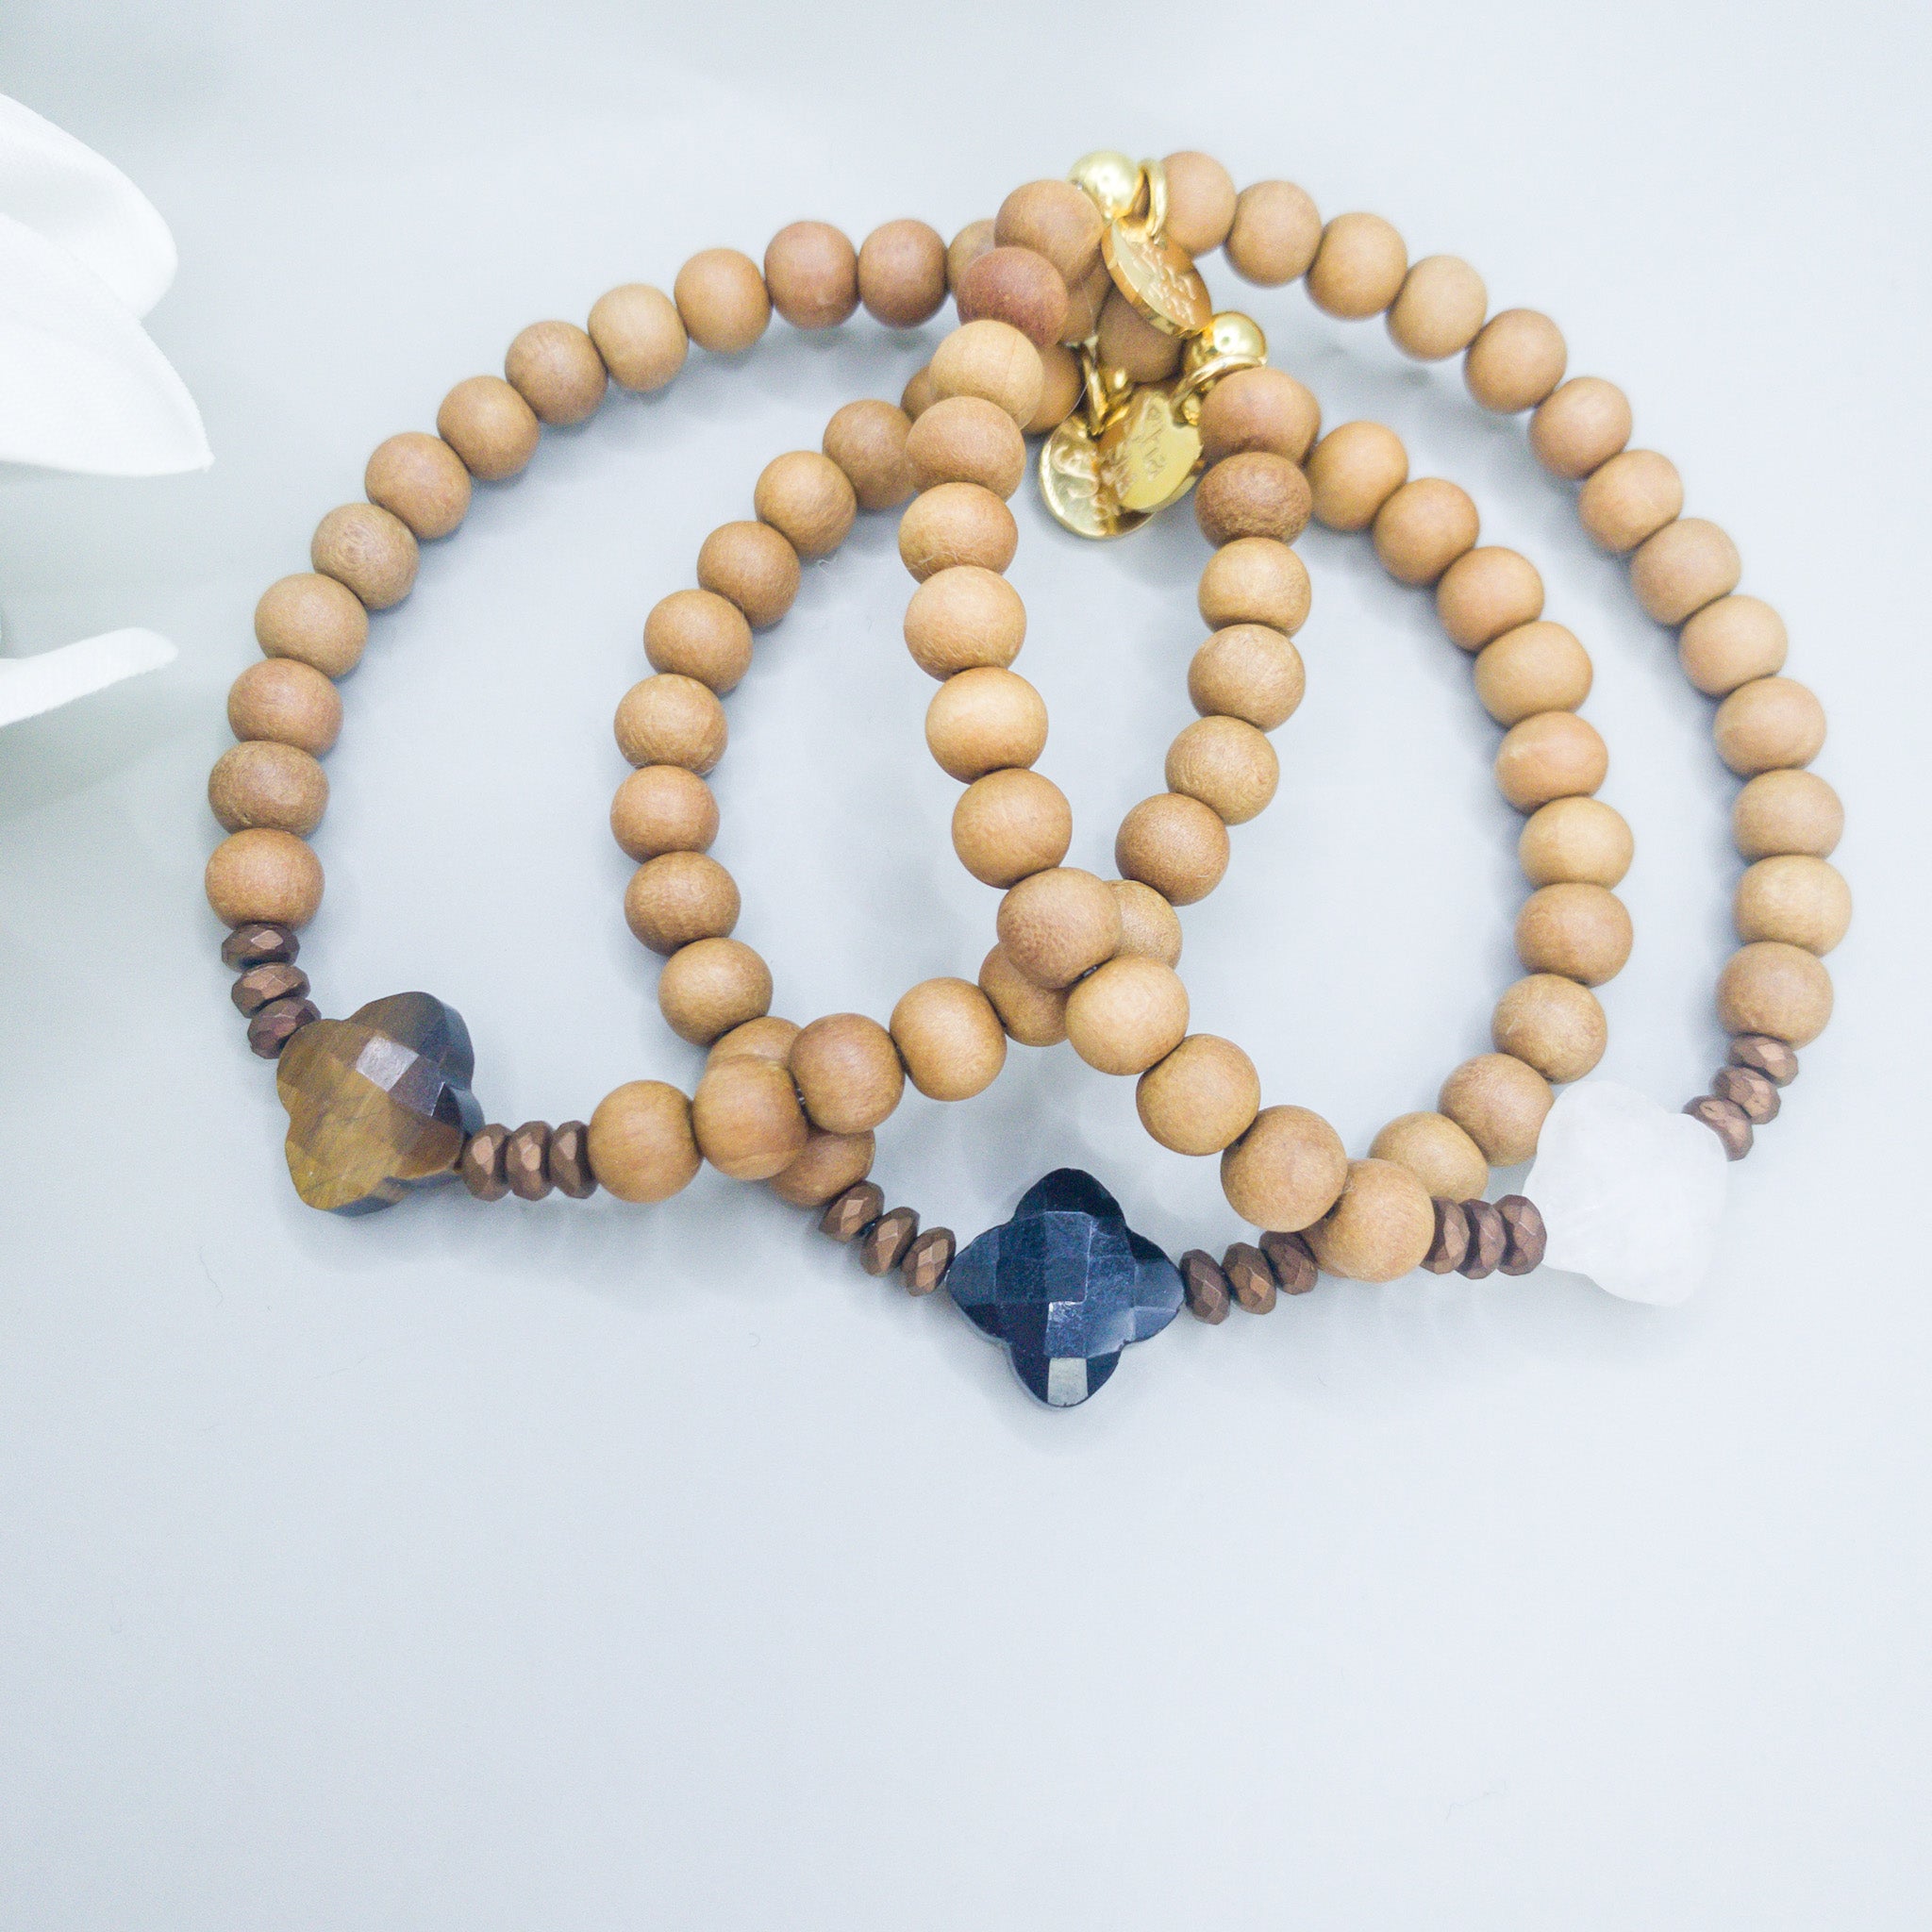 Black Obsidian & Sandalwood "Balance" bracelet - shasha yoga jewellery switzerland